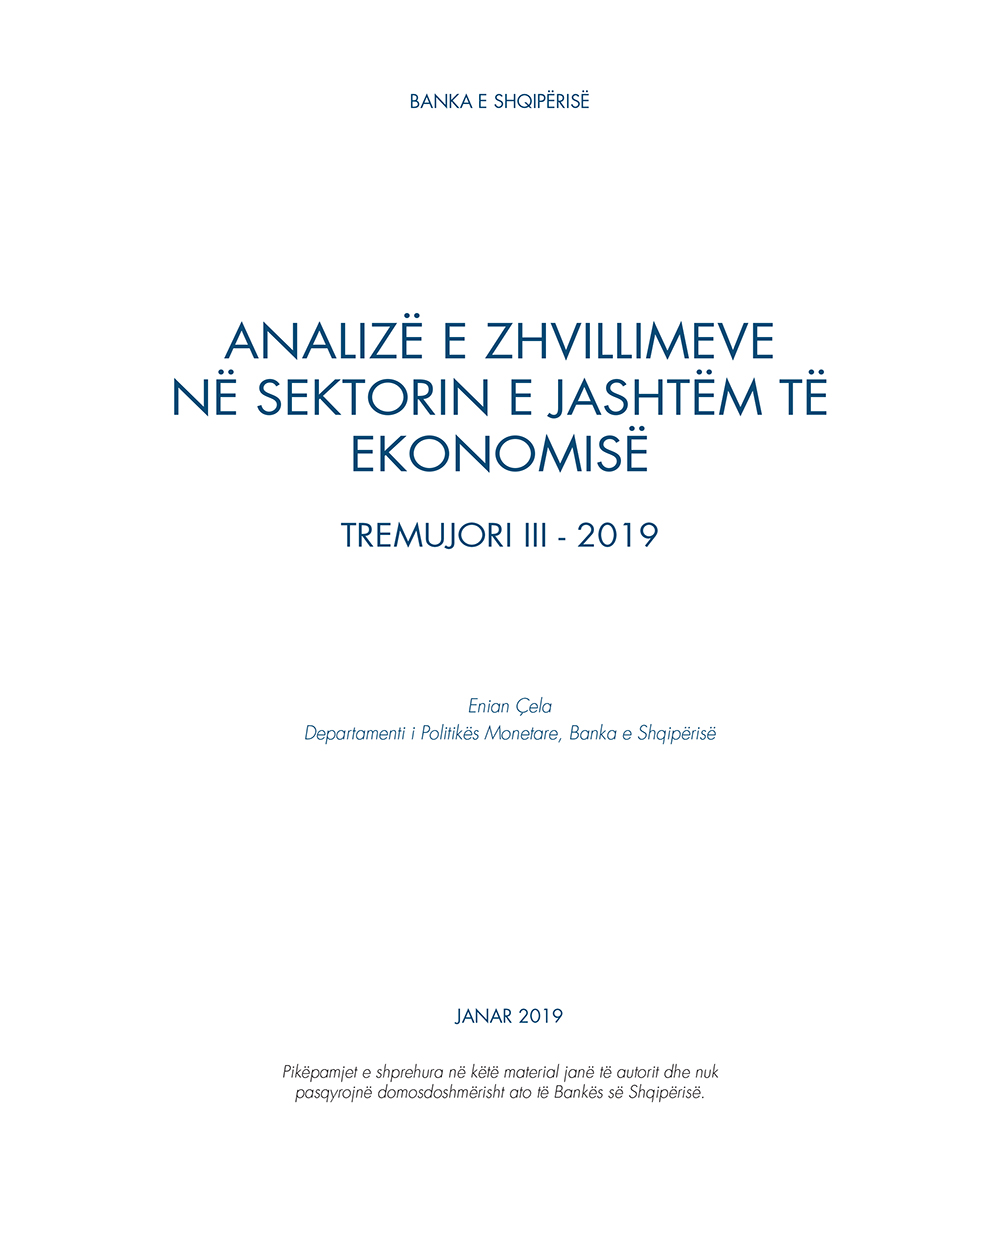 Analiza e ''Zhvillimeve në sektorin e jashtëm të ekonomisë'' T3-2019